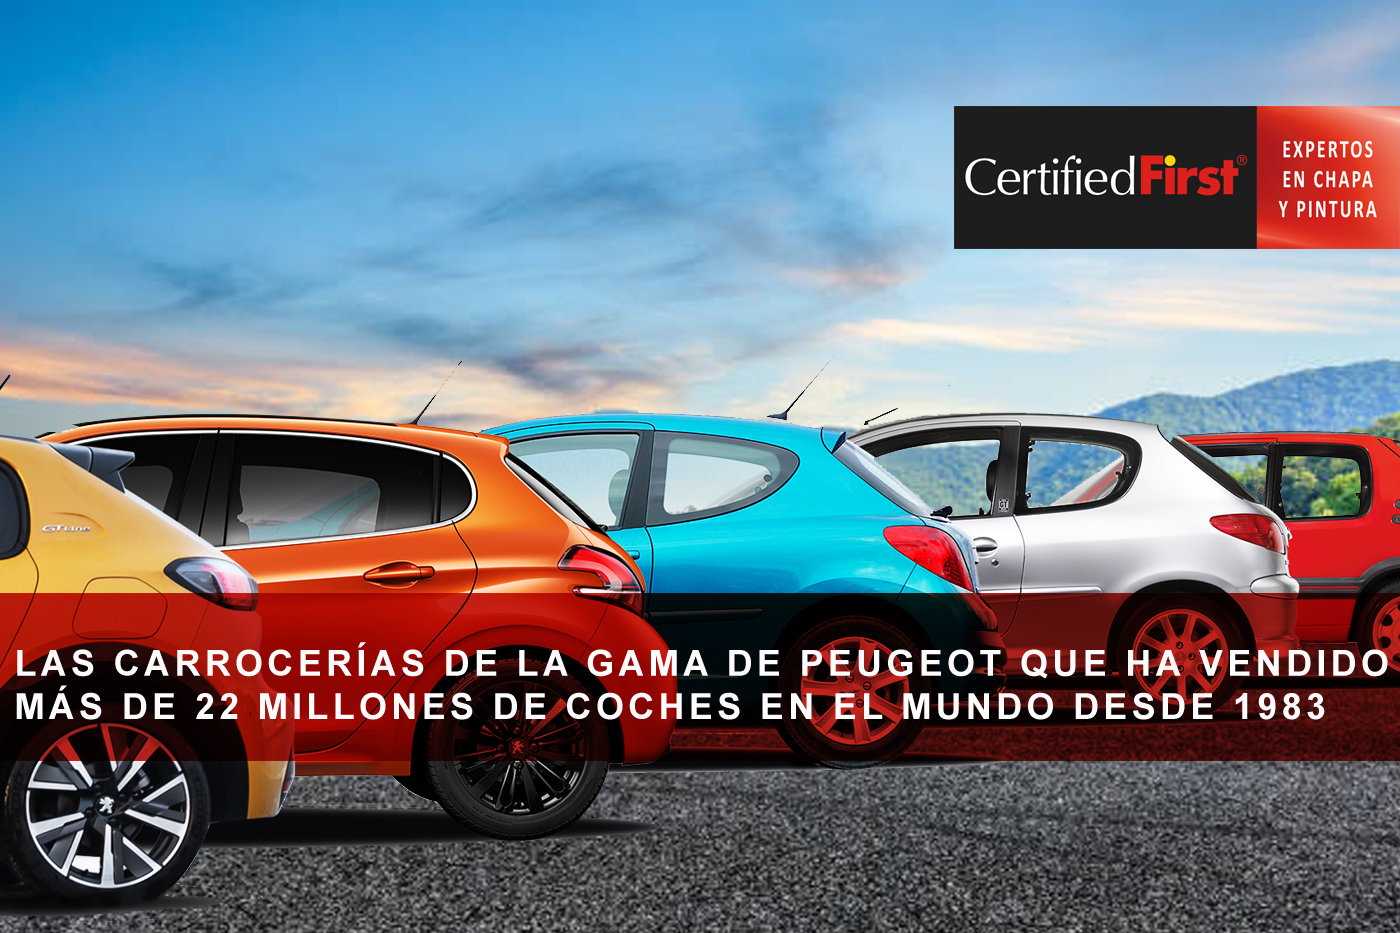 Las carrocerías de la gama de Peugeot que ha vendido más de 22 millones de coches en el mundo desde 1983